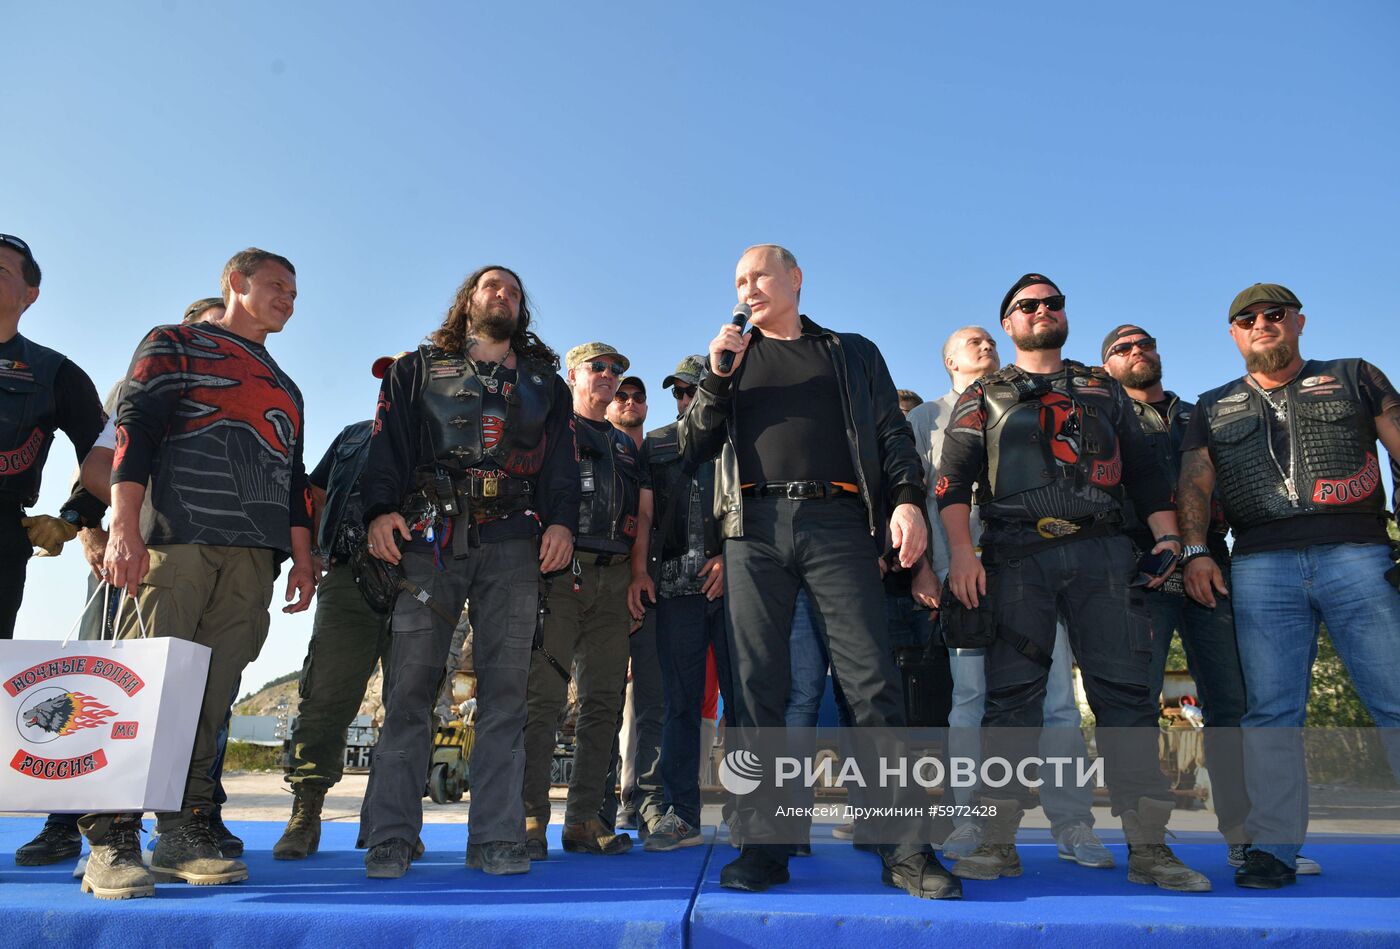 Президент РФ В. Путин посетил байк-шоу мотоклуба "Ночные волки" в Крыму